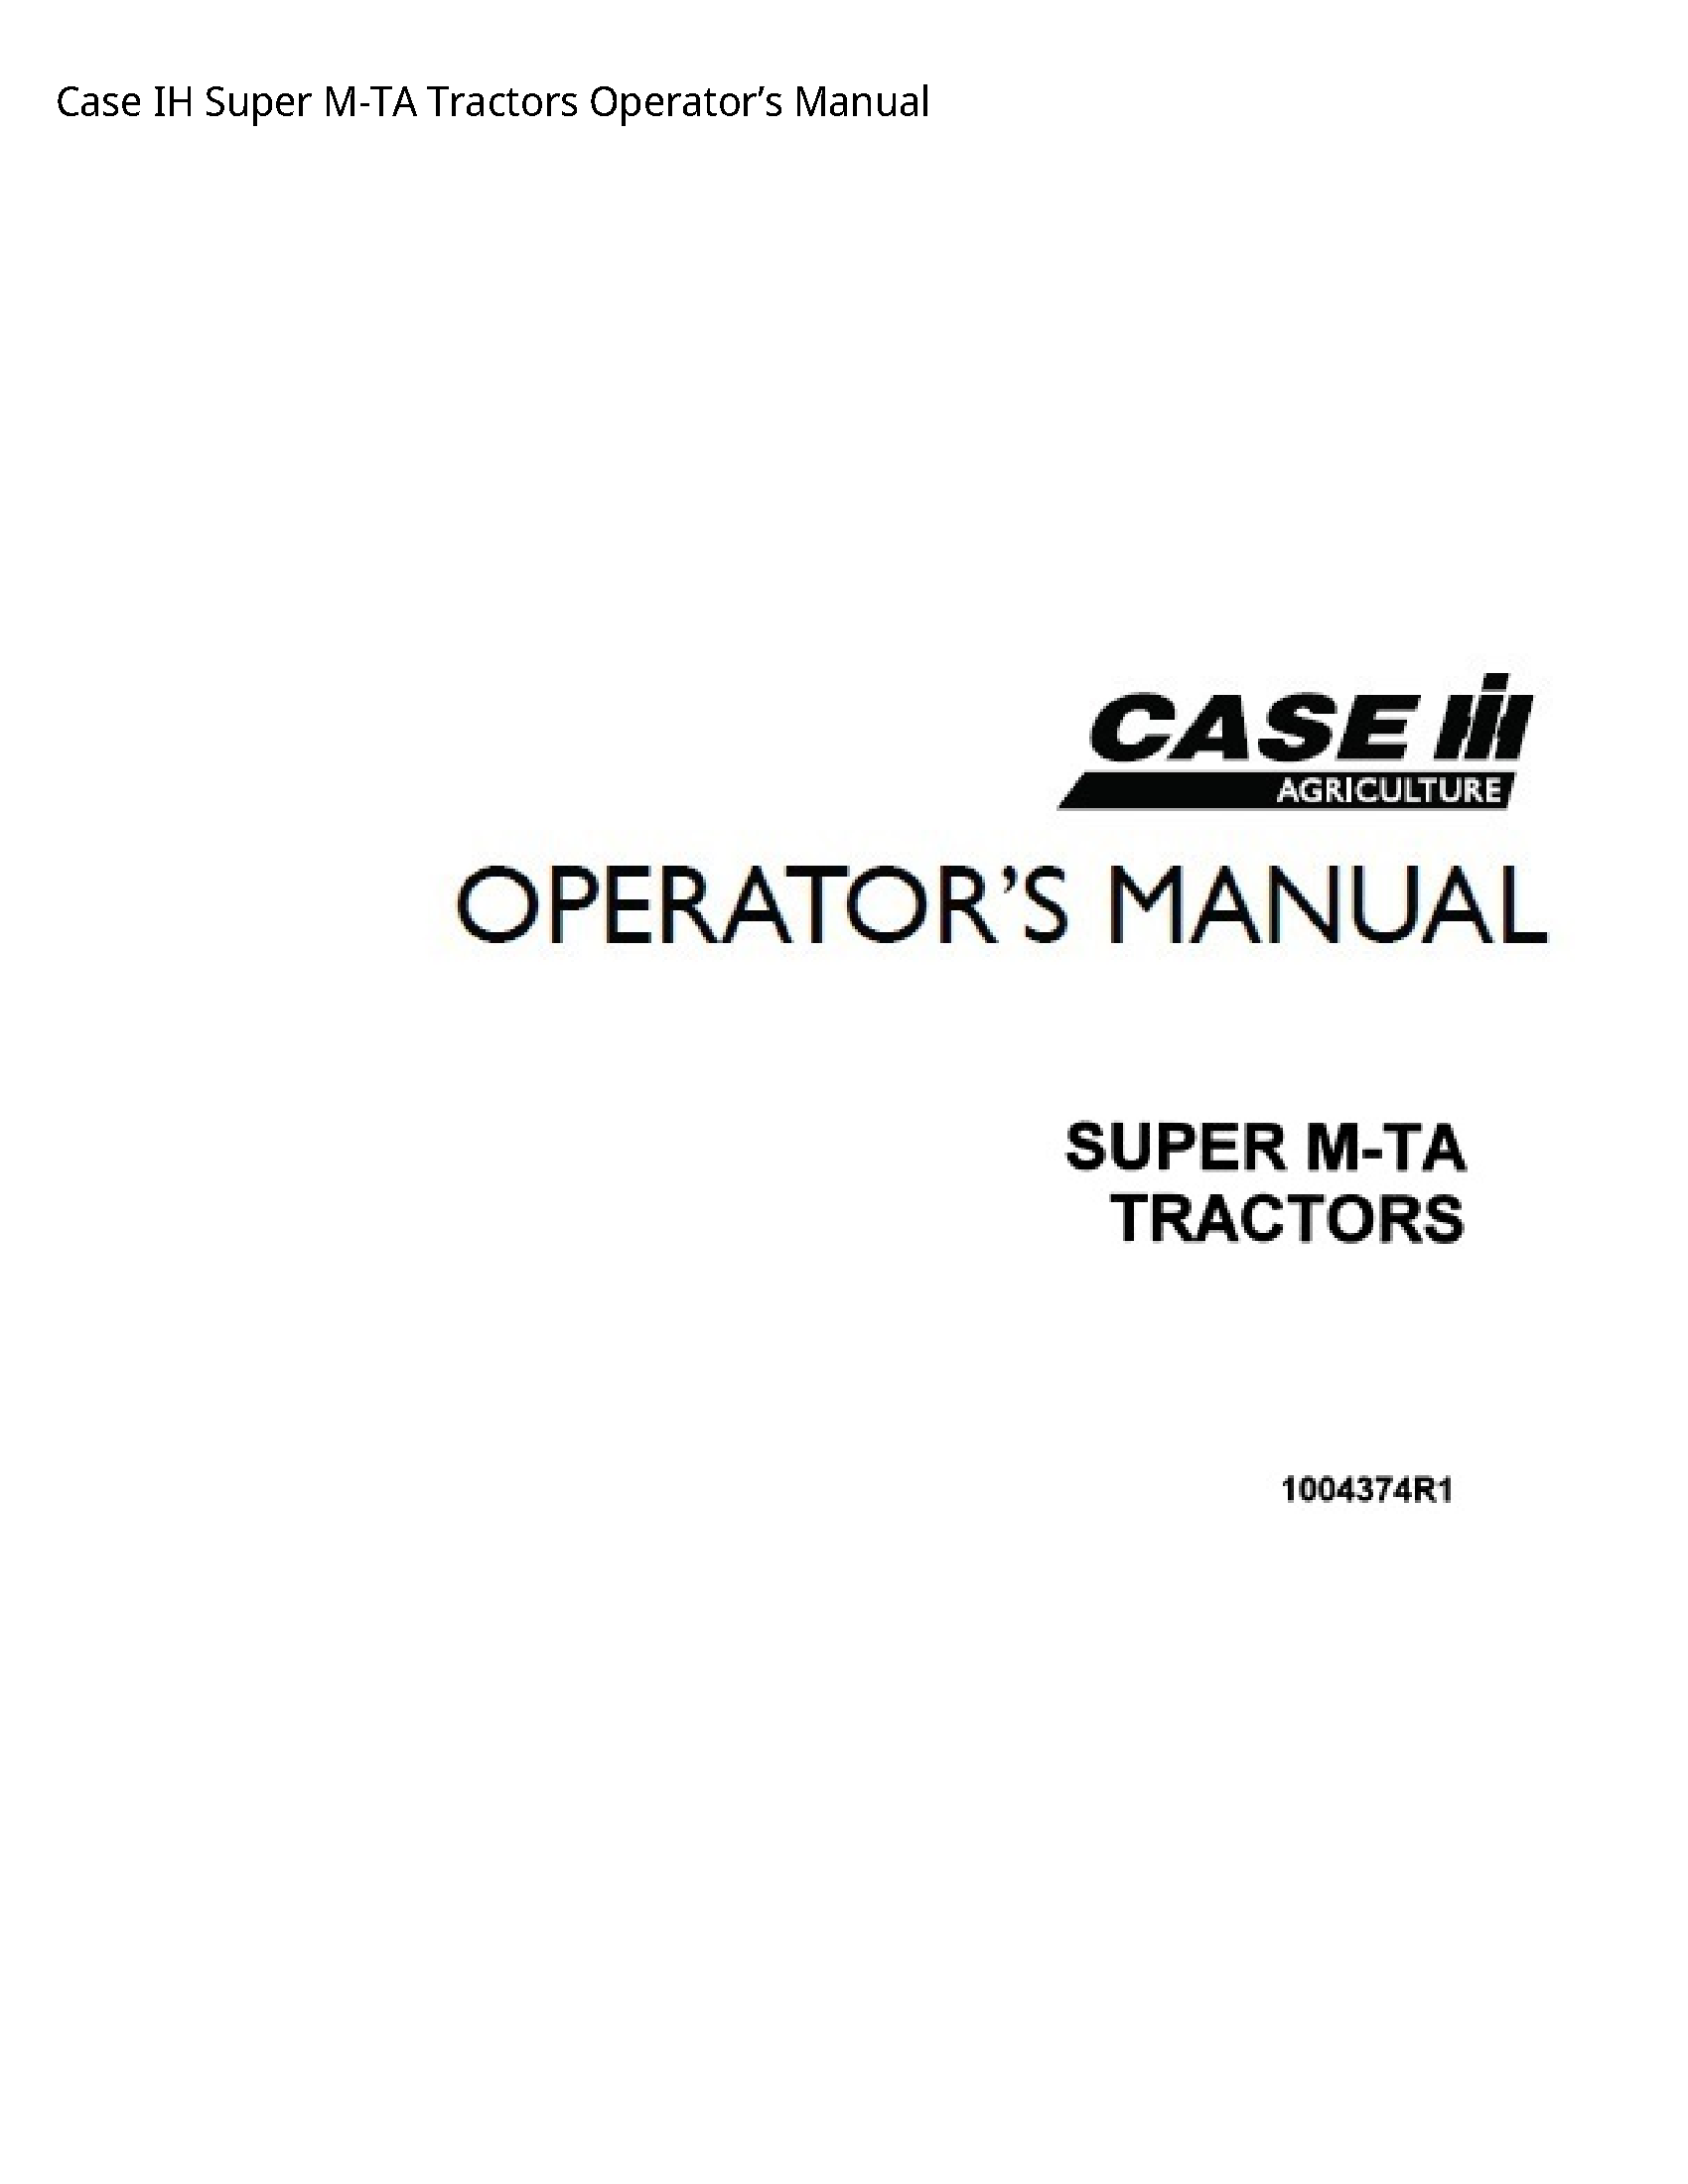 Case/Case IH IH Super M-TA Tractors Operator’s manual